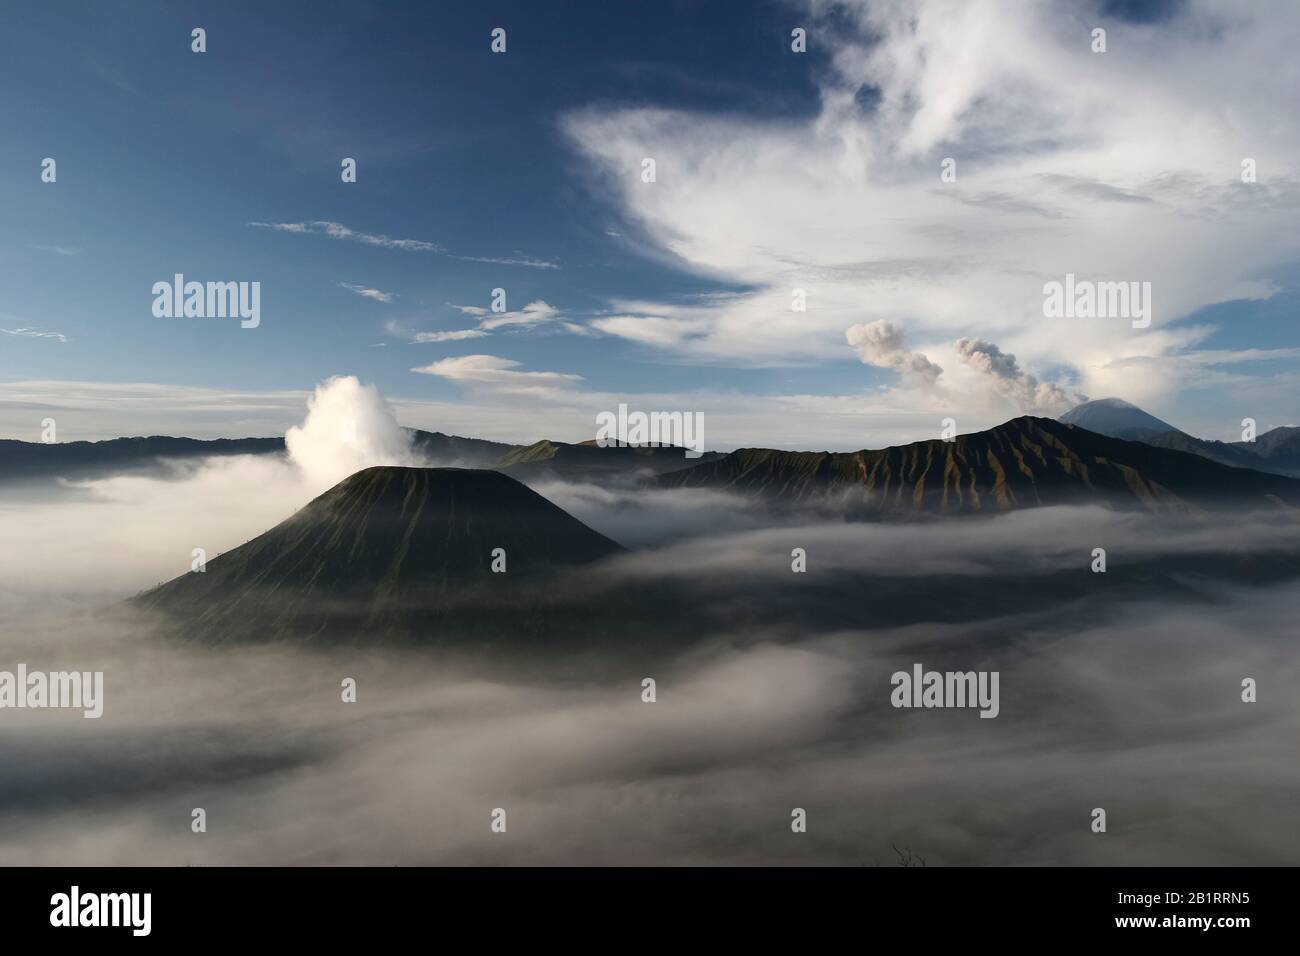 Cratère actif de Bromo sur la gauche, volcan Batok devant et volcan Semeru derrière, Parc national Bromo Tengger Semeru, île Java, Indonésie Banque D'Images